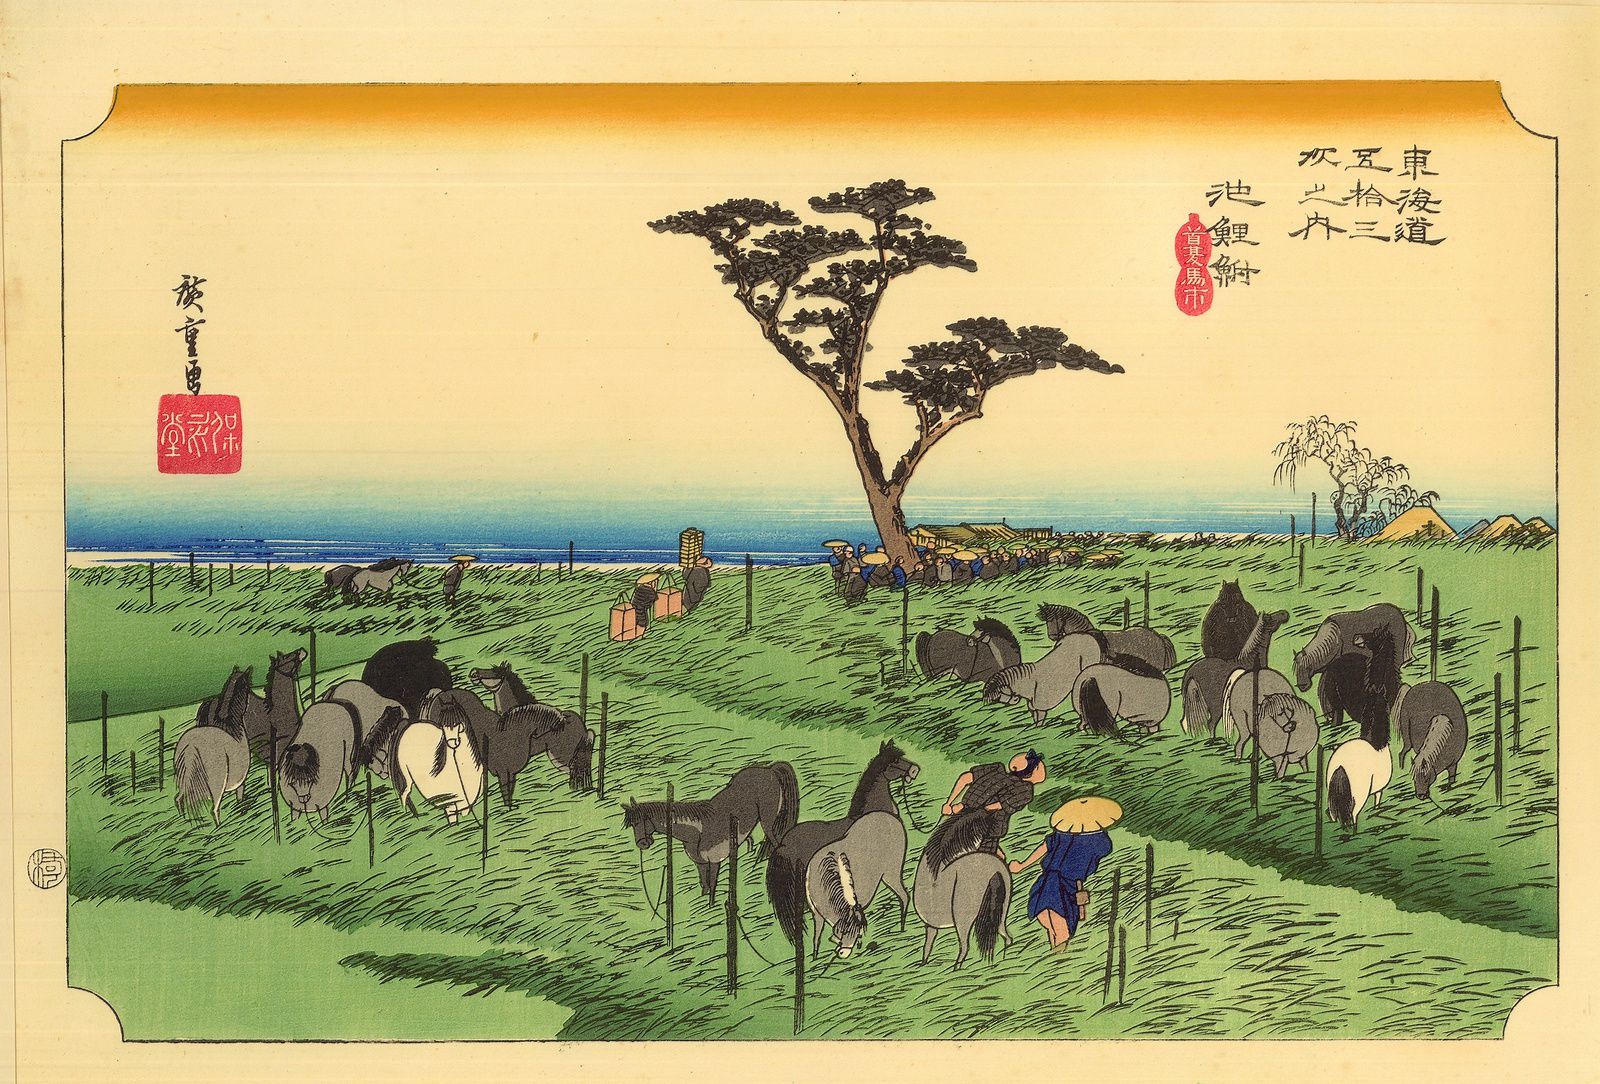 vends belle série de véritables estampes japonaises d'Hiroshige : fleurs et  animaux - paris-vente-veritables-estampes-objets-art-japon.overblog.com